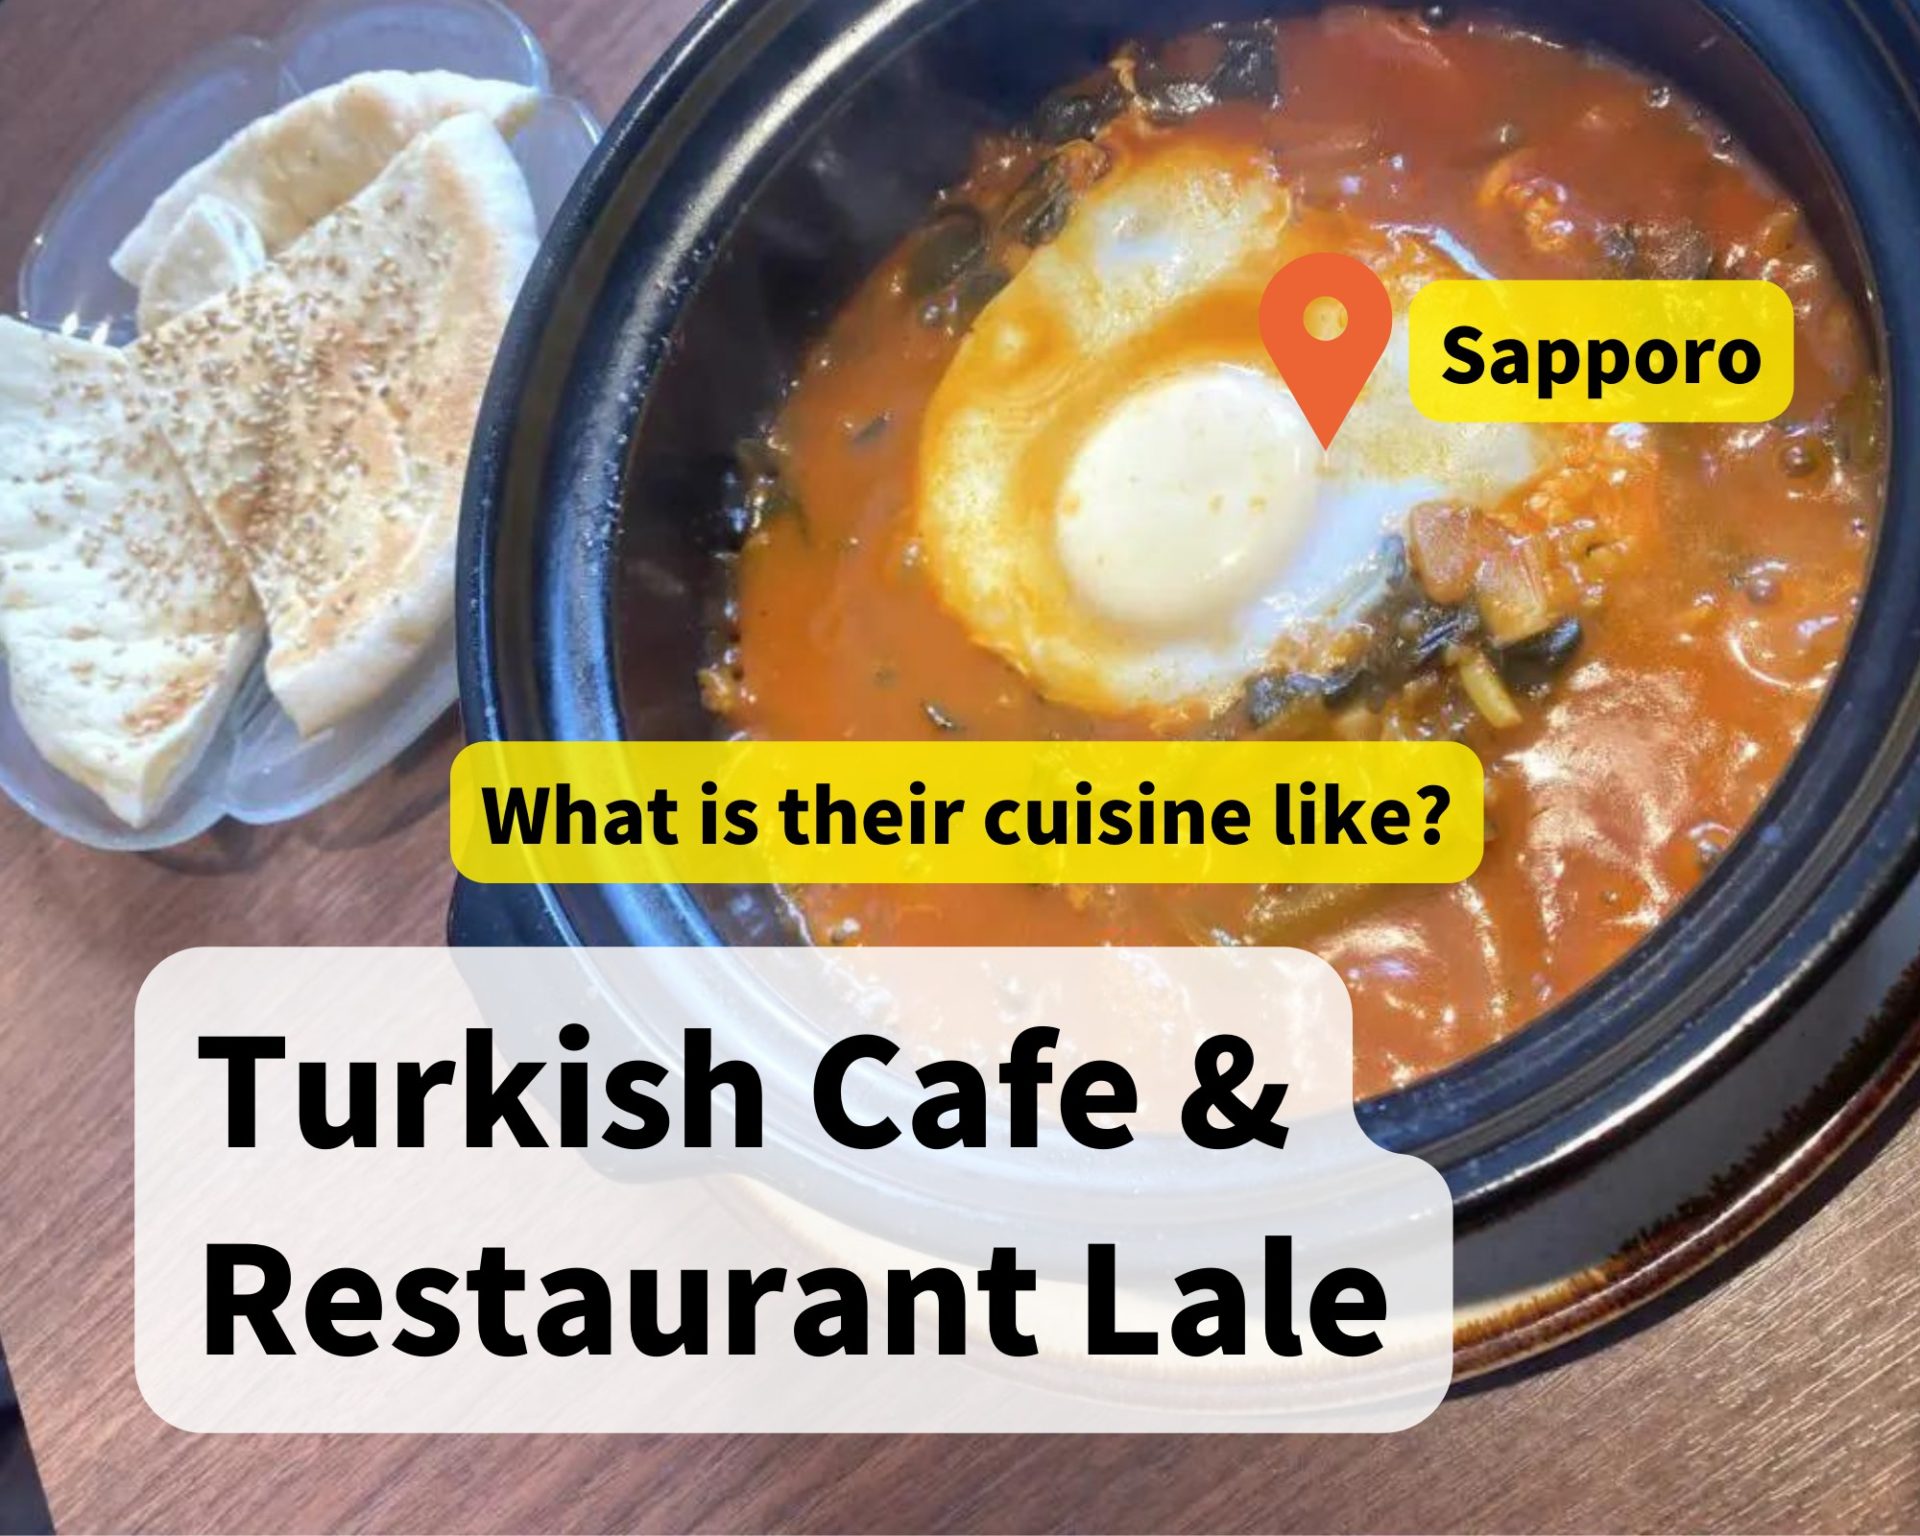 LALE Turkish restaurant